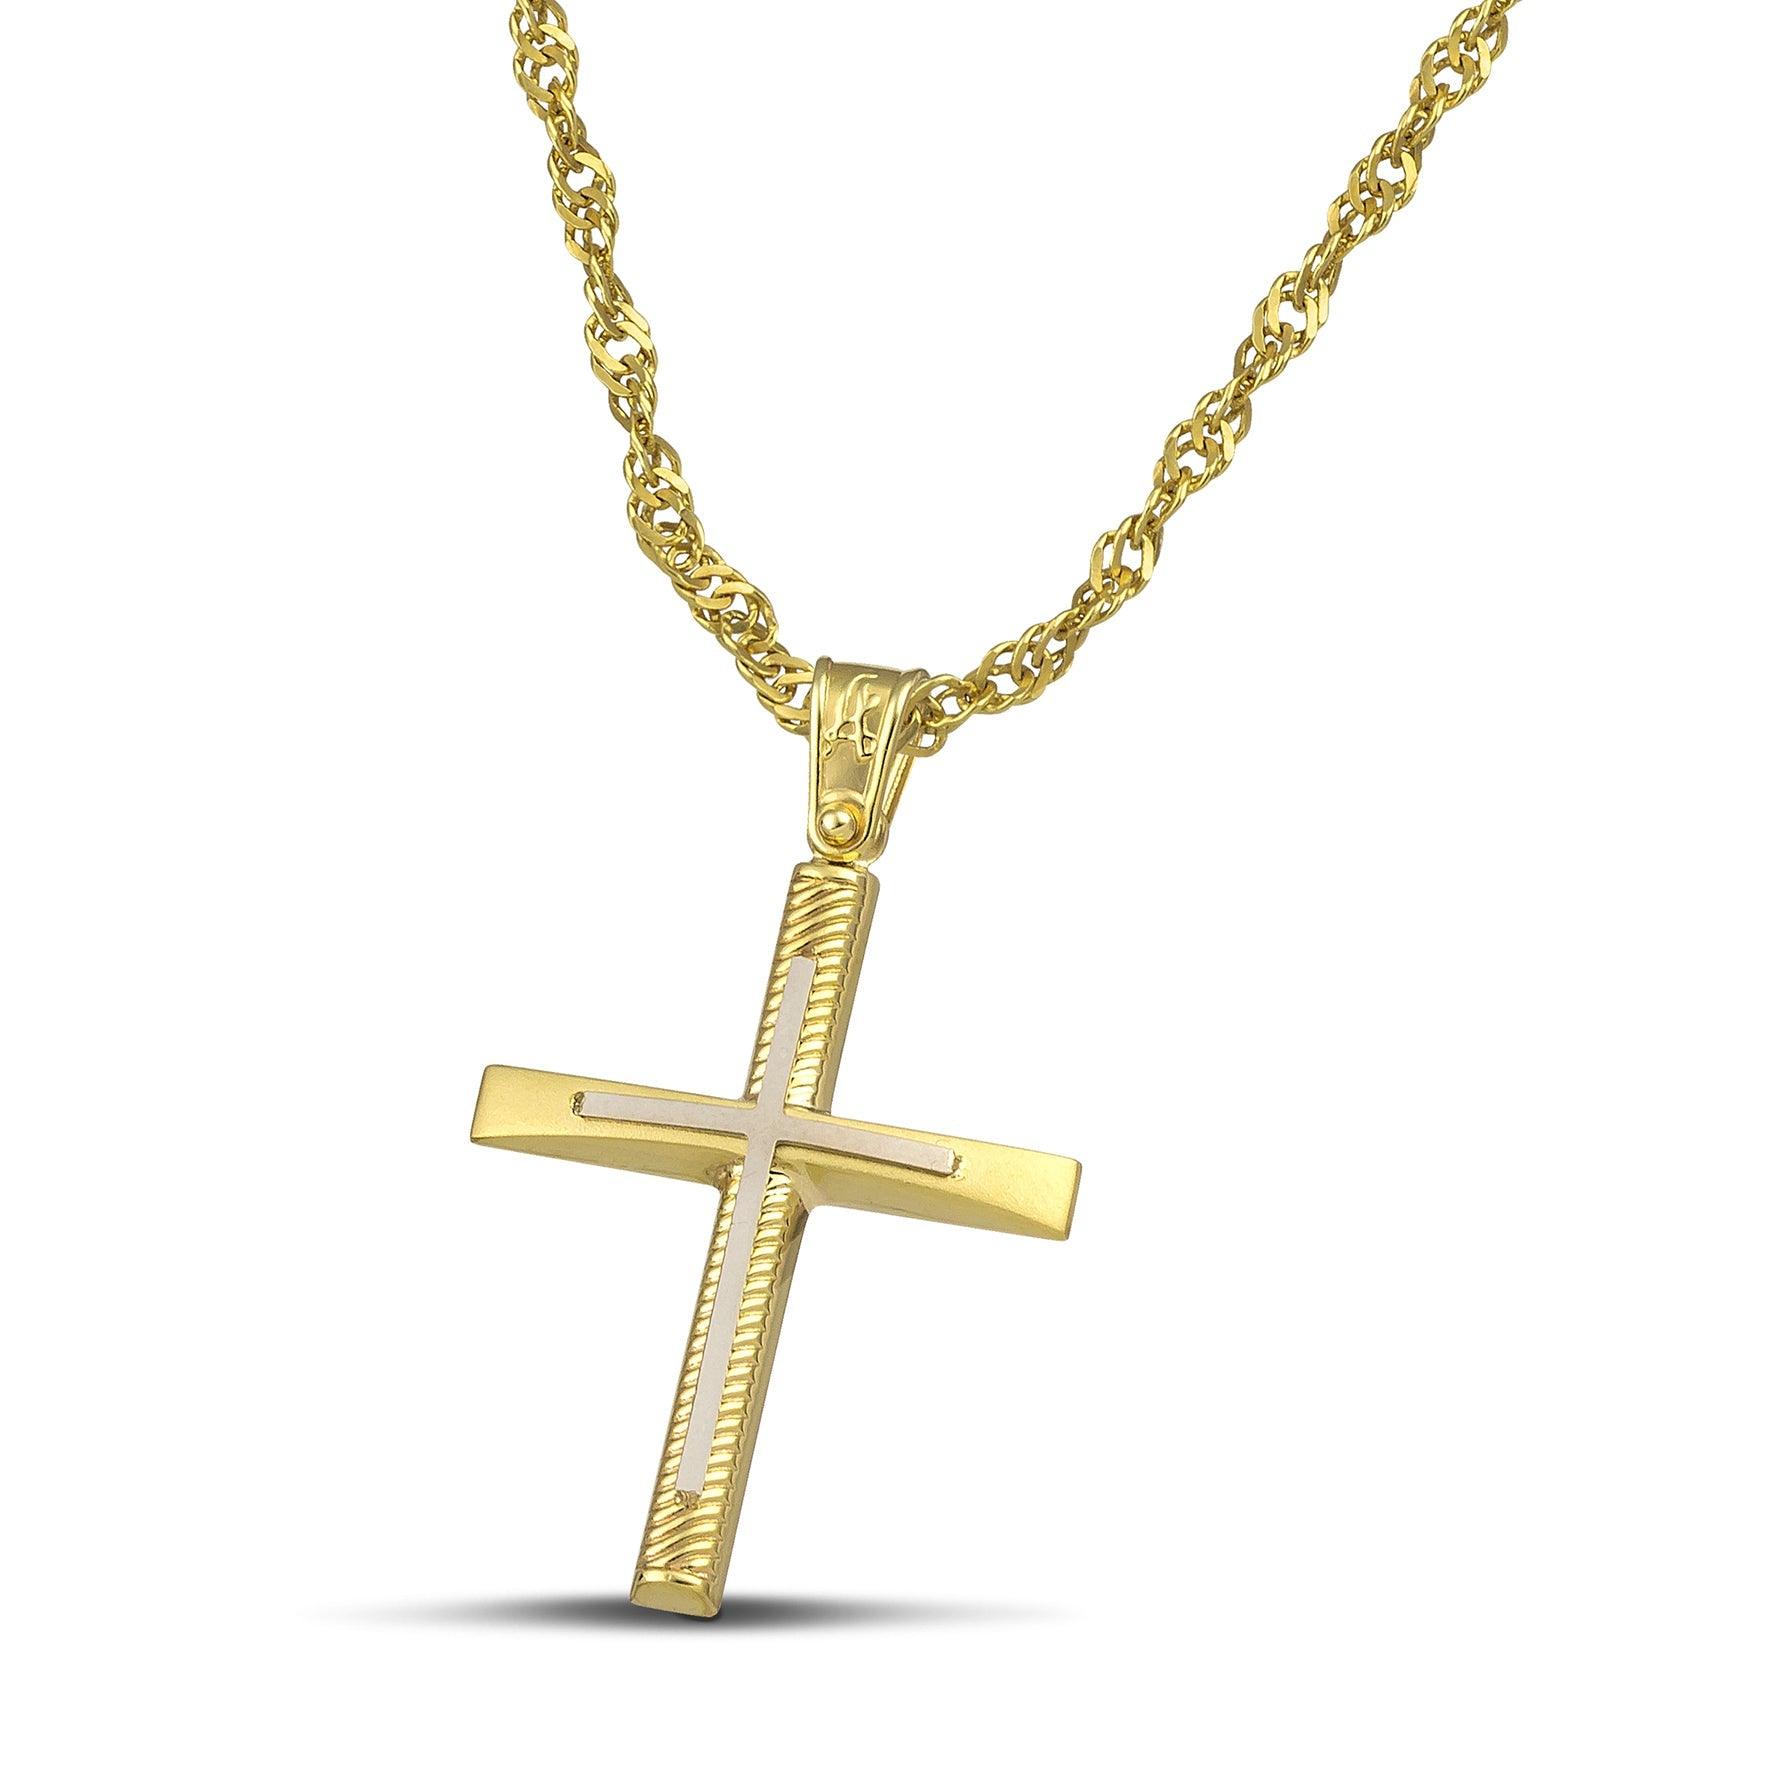 Σταυρός βάπτισης χρυσός Κ14 για γυναίκα. Διαθέτει σκαλιστά σχέδια και λευκόχρυσο σταυρό, με στριφτή αλυσίδα.